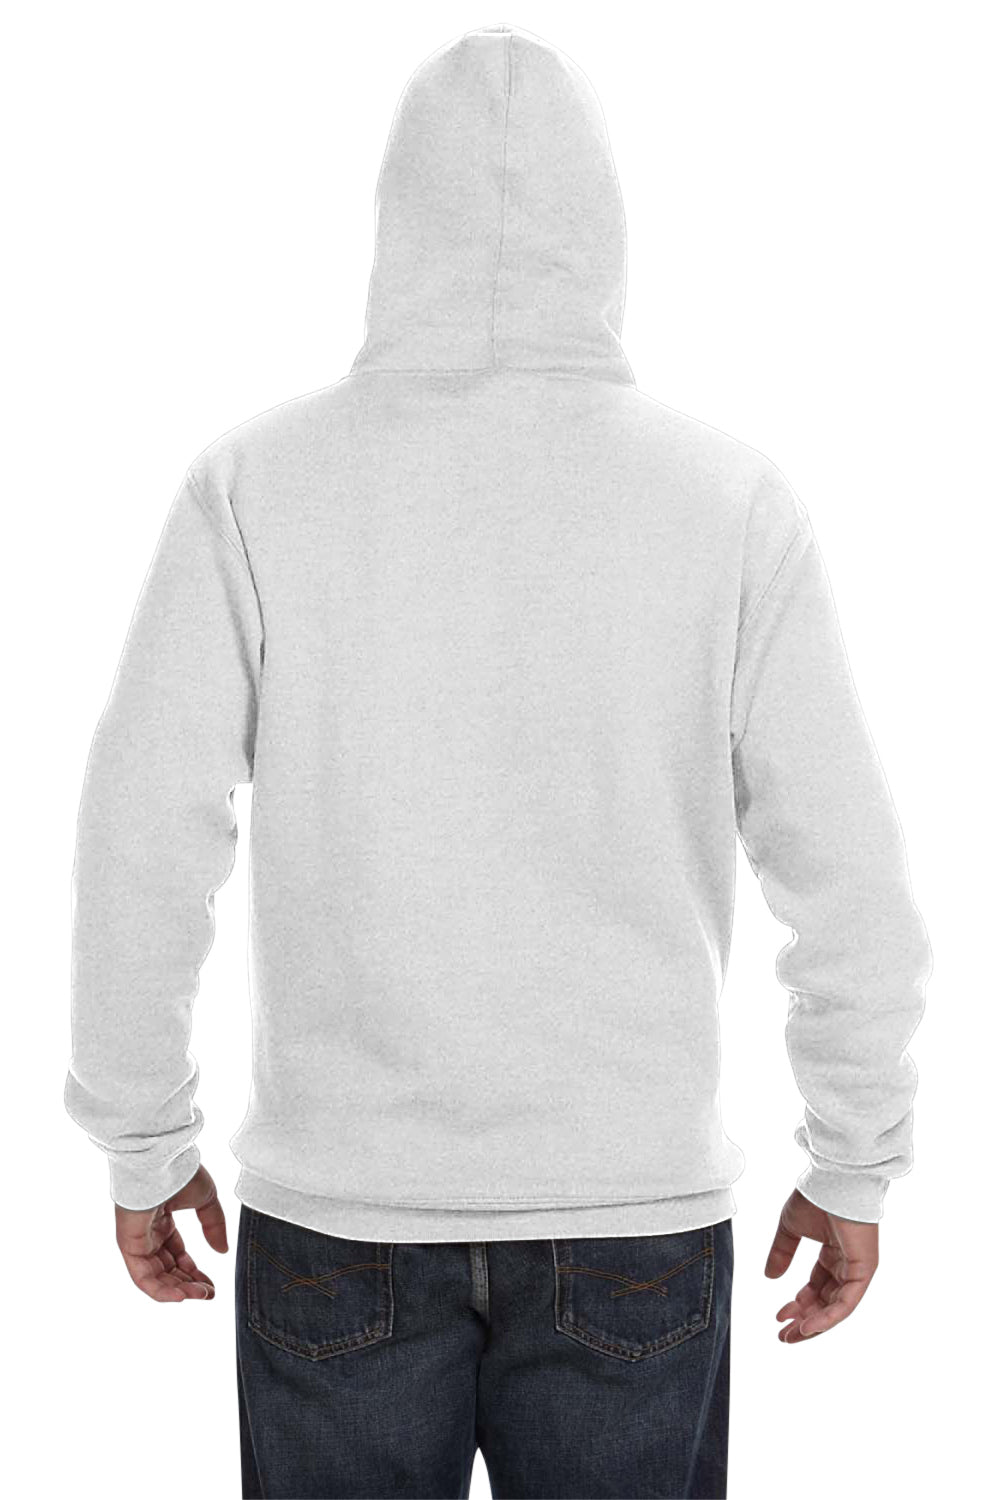 J America JA8824 Mens Premium Fleece Hooded Sweatshirt Hoodie Ash Grey Back